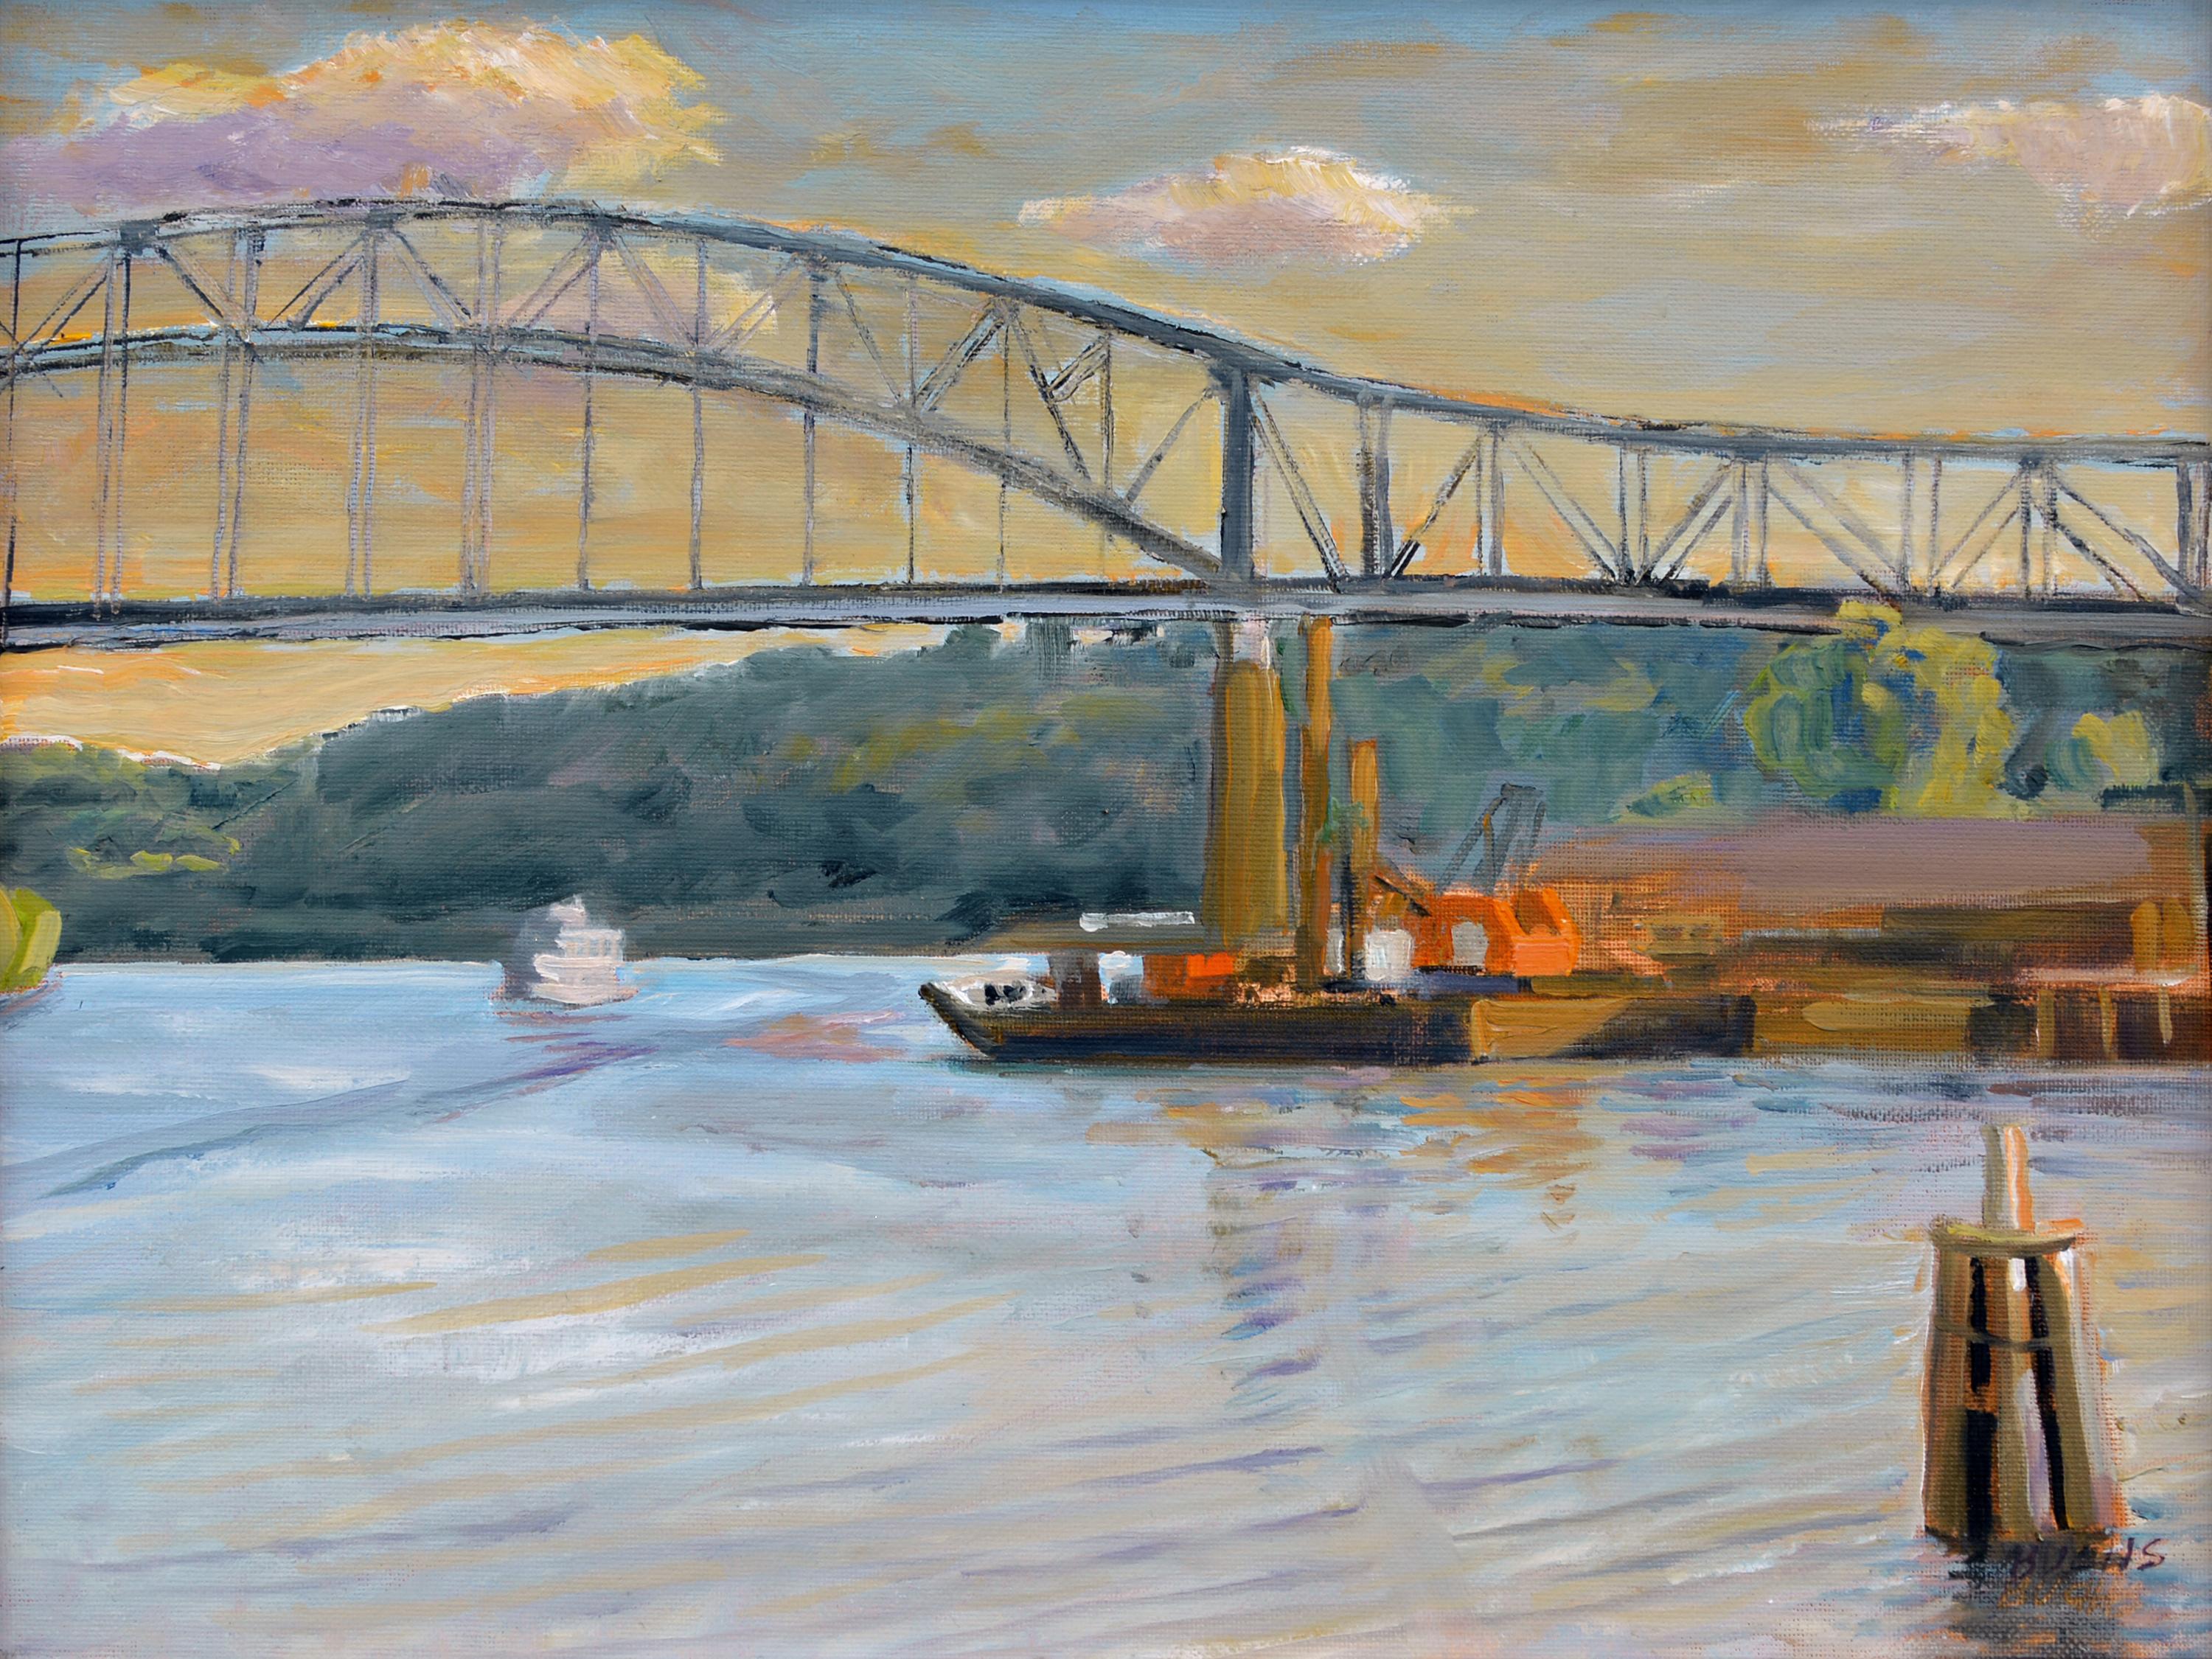 Industrie-impressionistische Reise Mississippi River Fishing Bridge Sonnenaufgang Signiert – Painting von Thomas Buchs